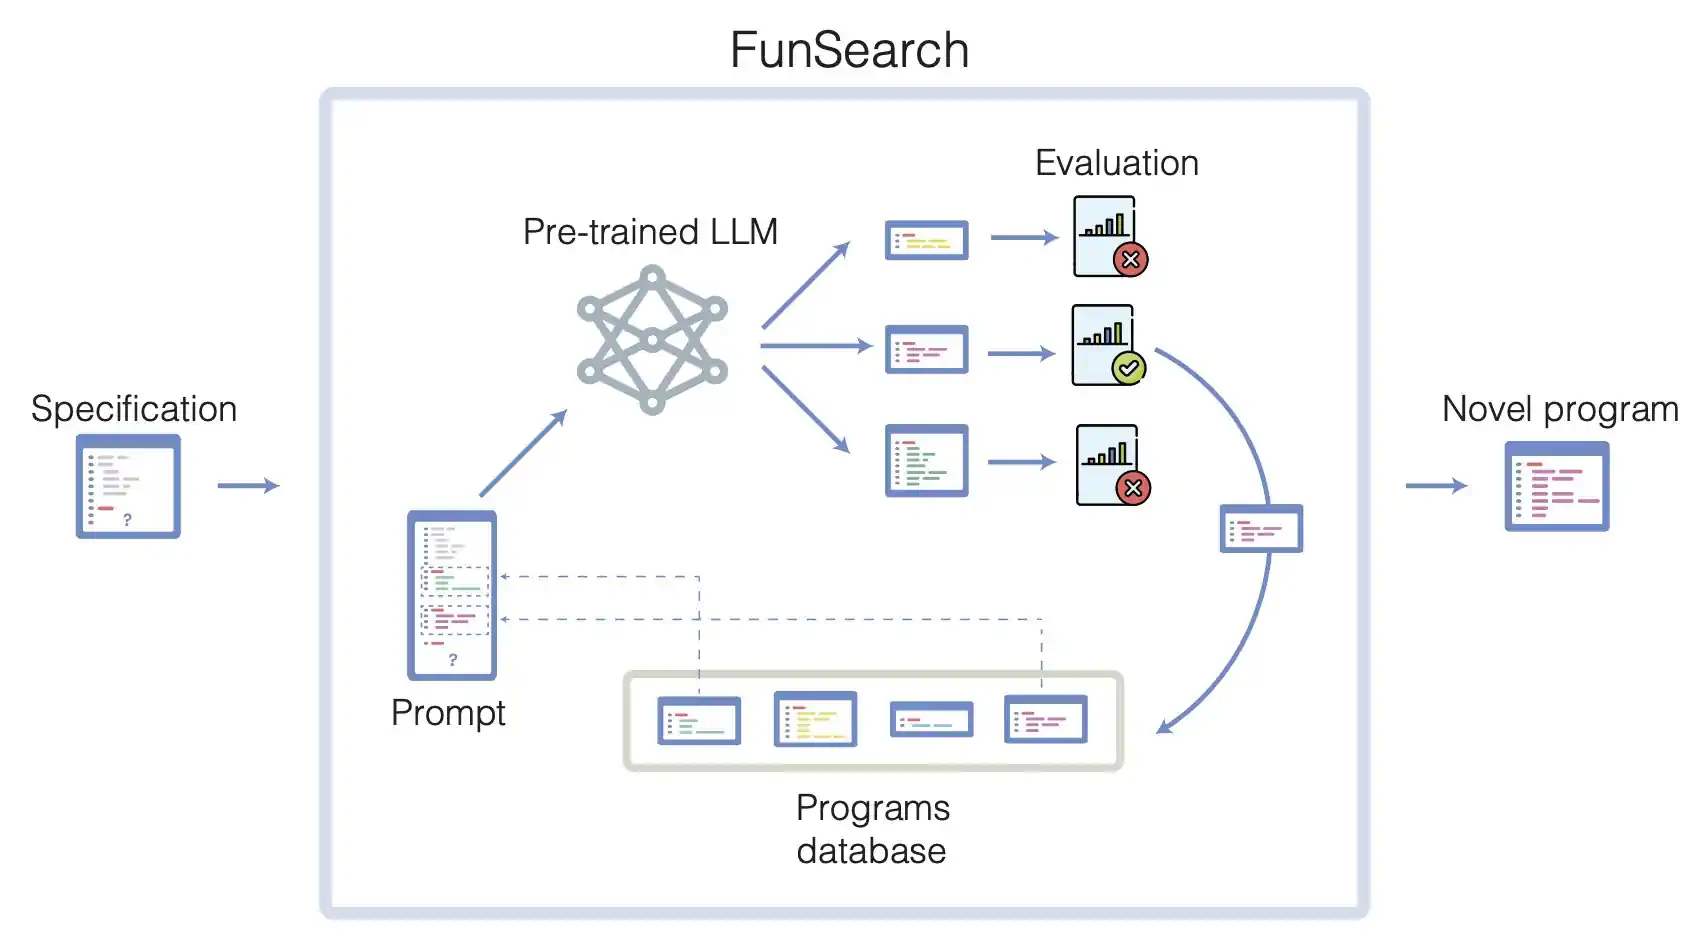 展示 FunSearch 过程的图解，包括代码截图、网络结构和带有勾选和叉号的图形。